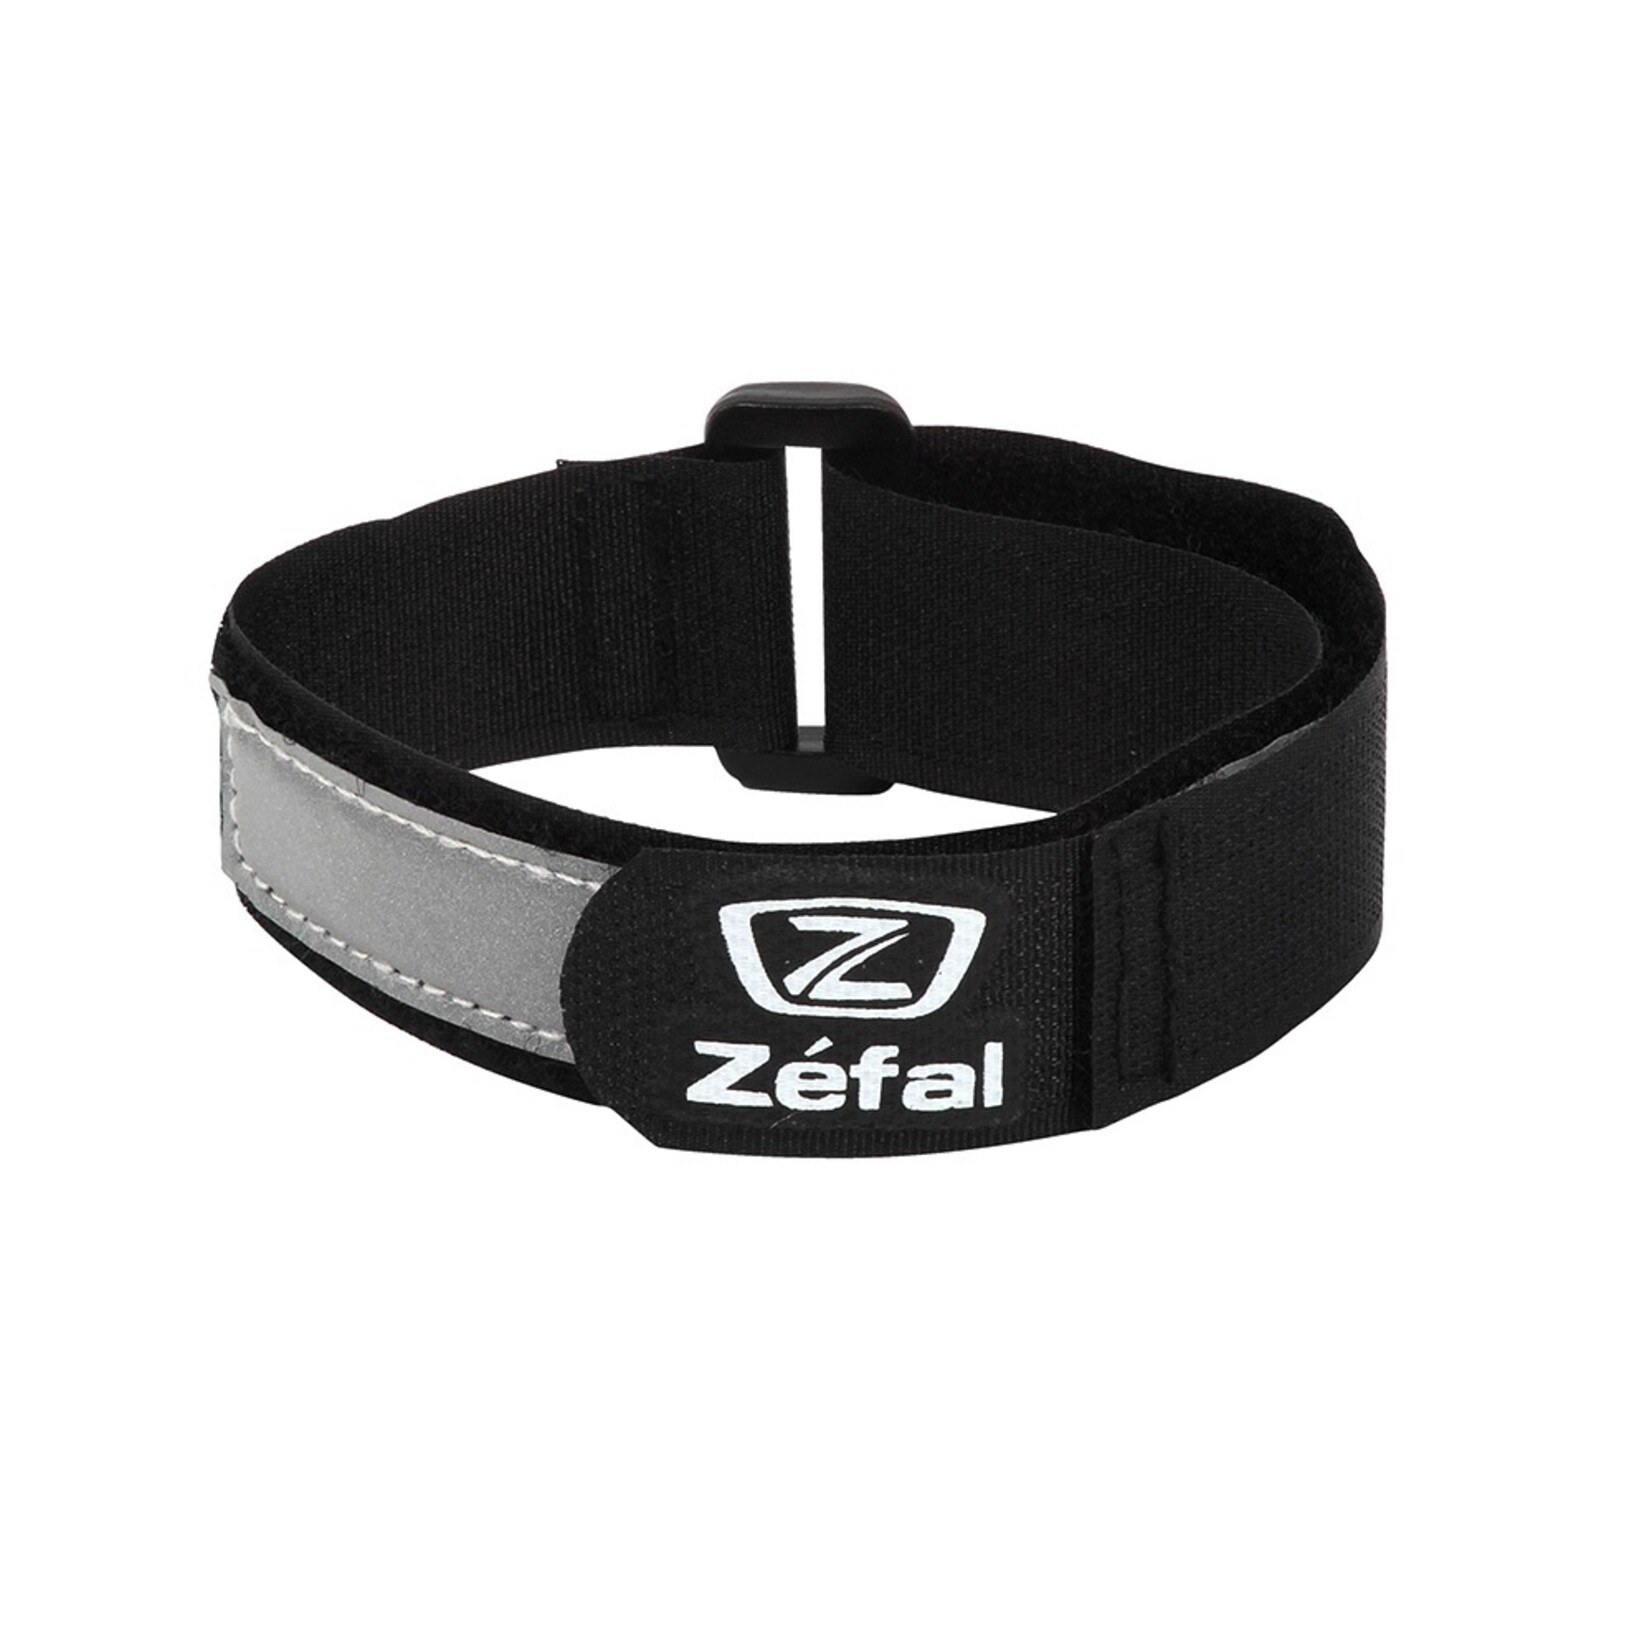 Zefal Zefal Doowah Trouser Strap Black Pair